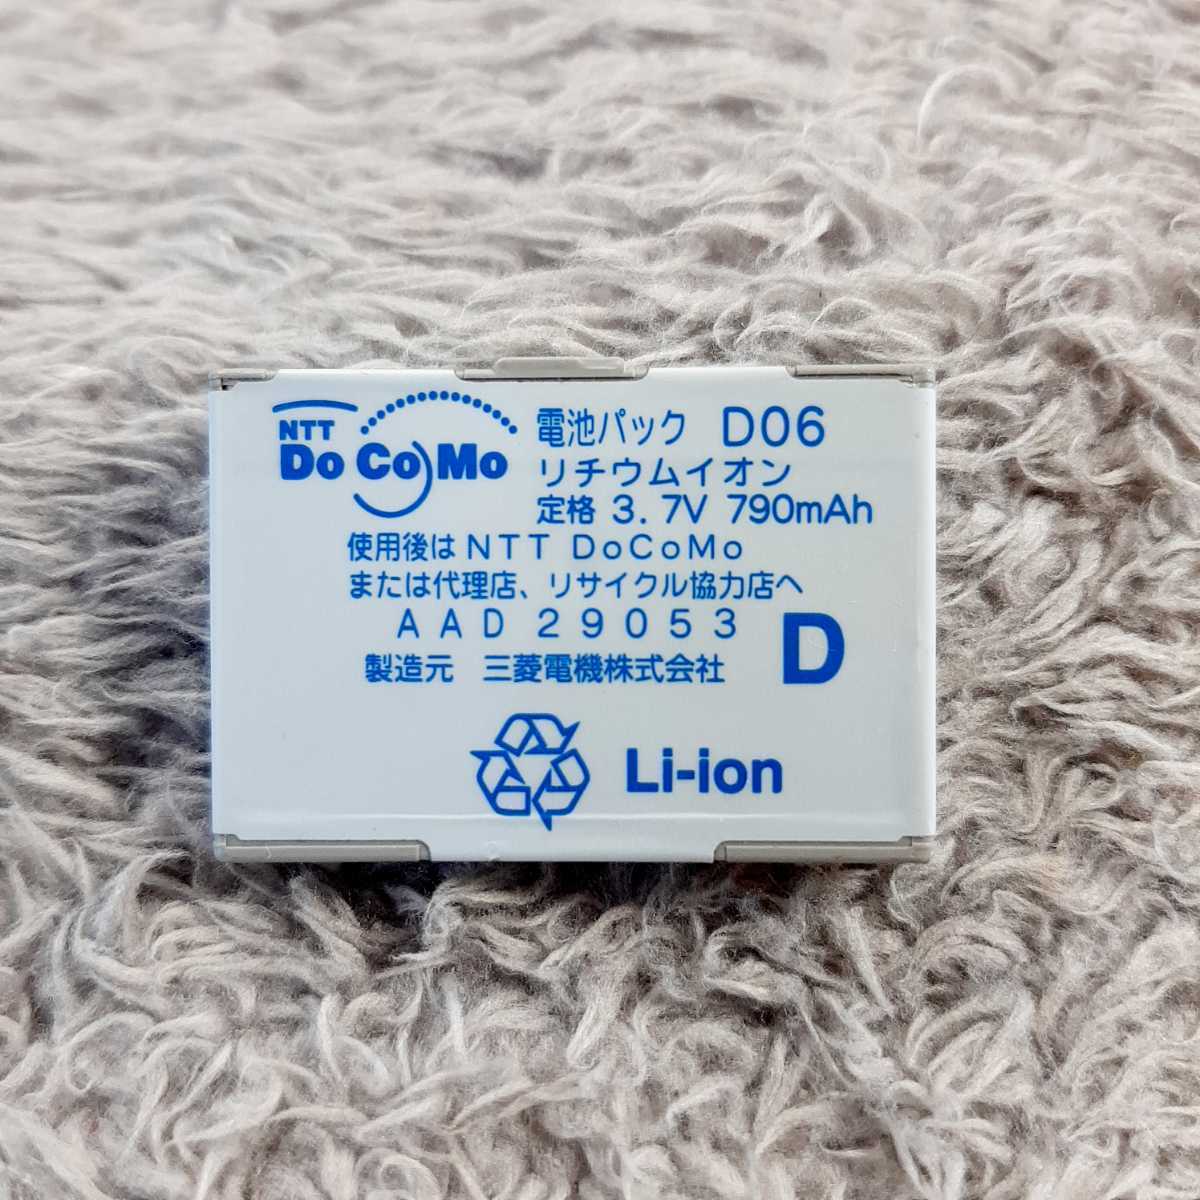  DoCoMo original battery pack Mitsubishi Electric [D06]D902i/D902iS/D903i/D903iTV correspondence 